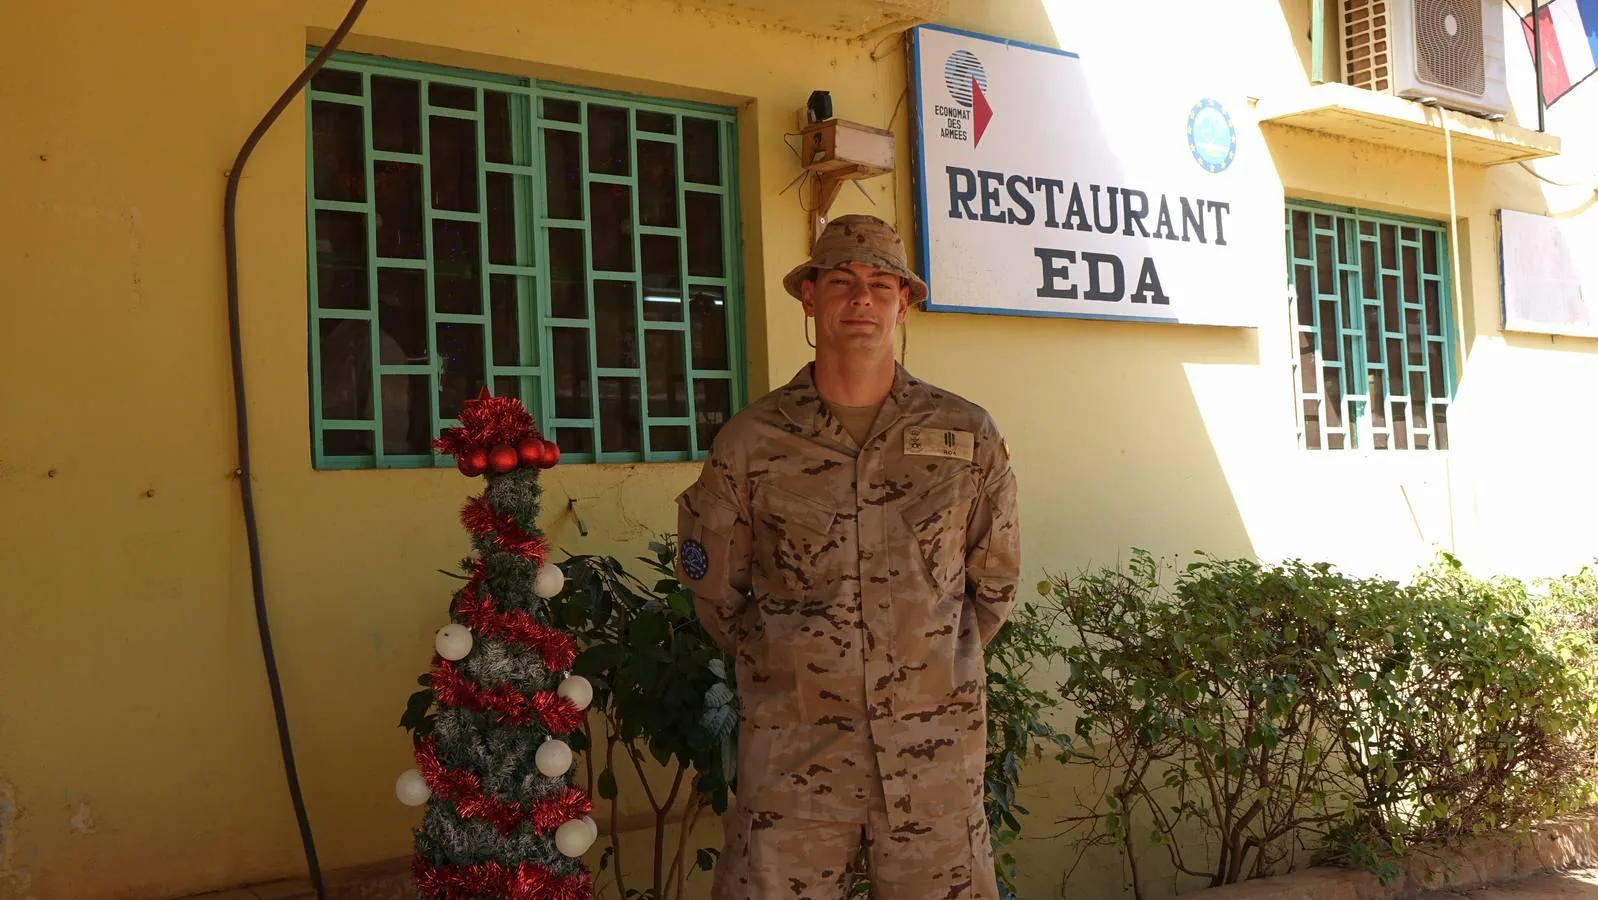 Fotos: Militares gaditanos desplegados en Irak, Malí y el Mediterráneo central celebran la Navidad